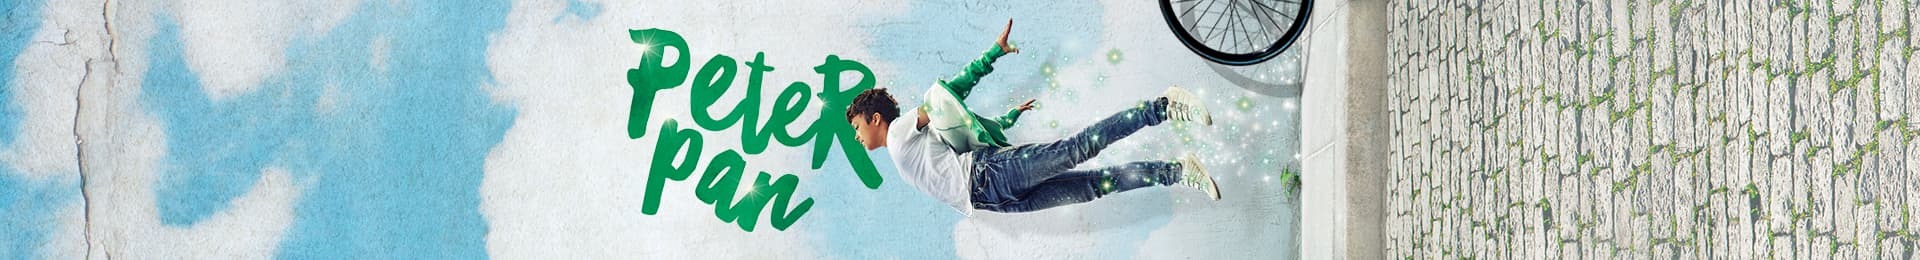 Peter Pan banner image